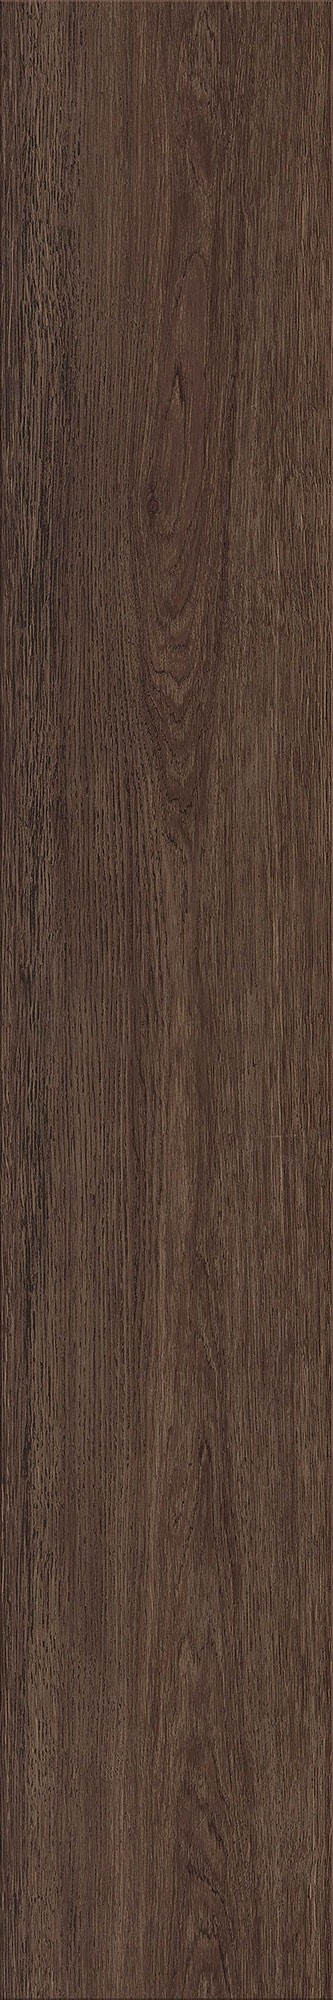 Expona Commercial - Dark Brushed Oak 4030